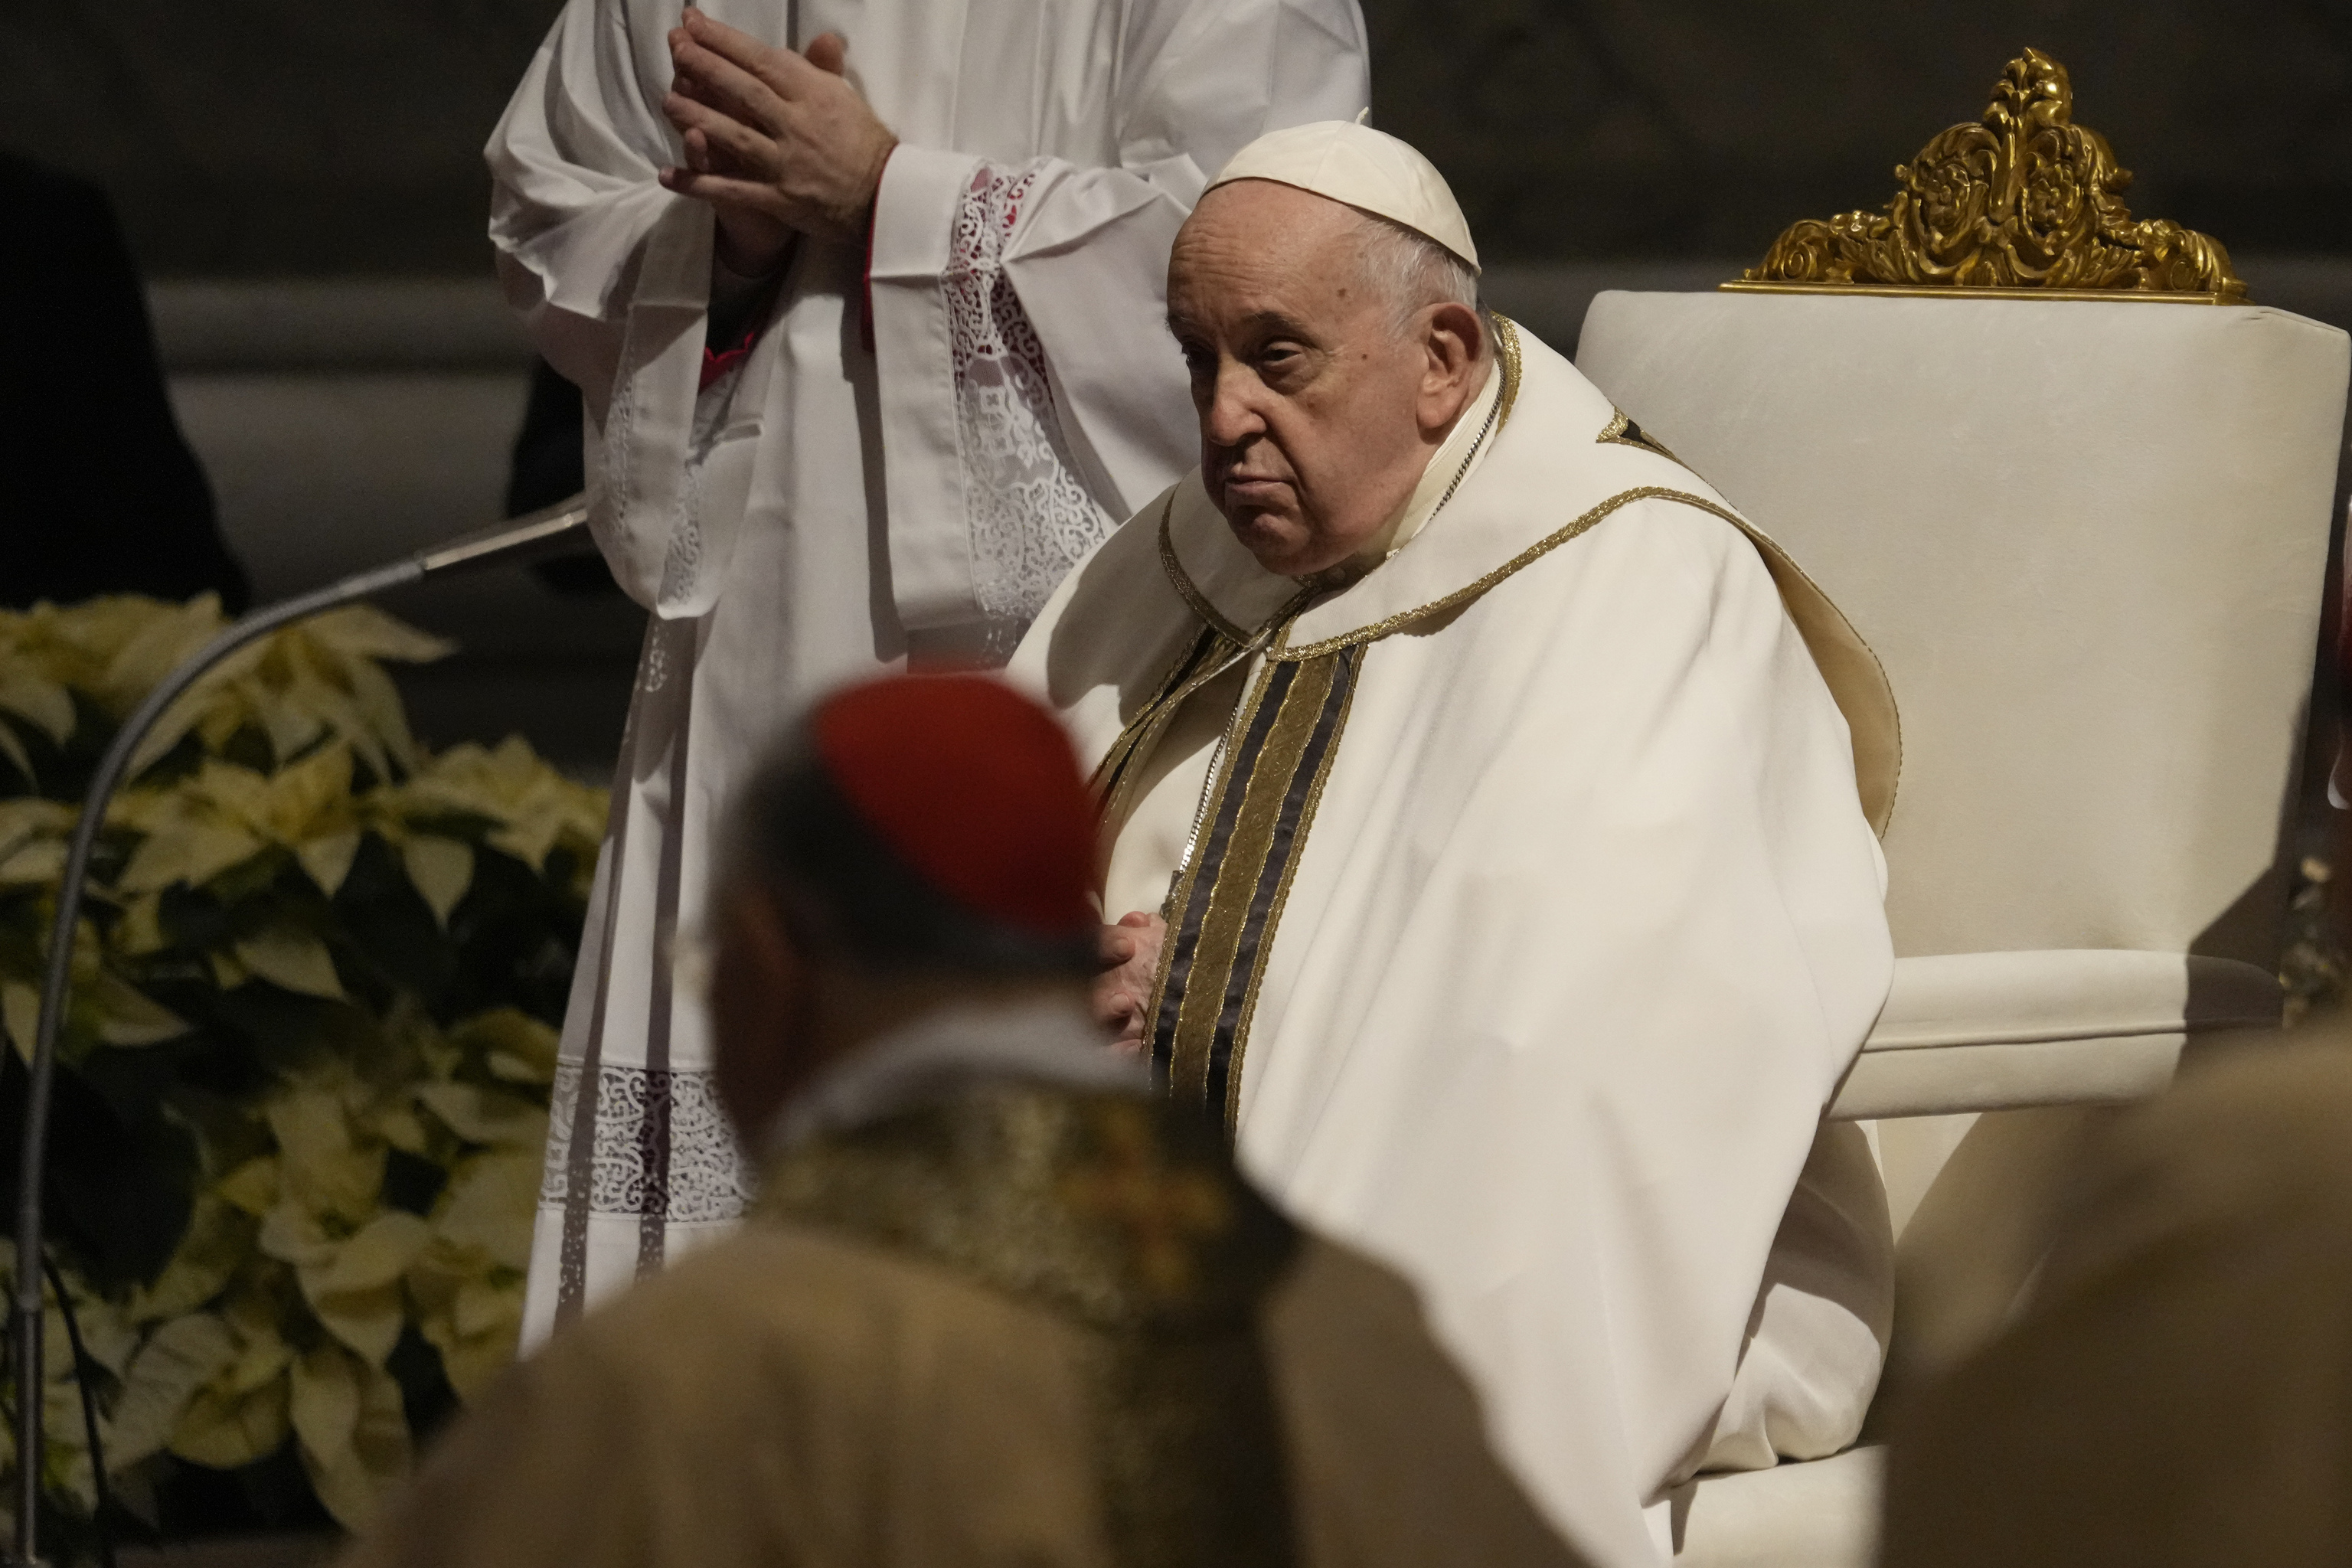 El Papa Francisco preside la Misa de Nochebuena, en la Baslica de San Pedro del Vaticano